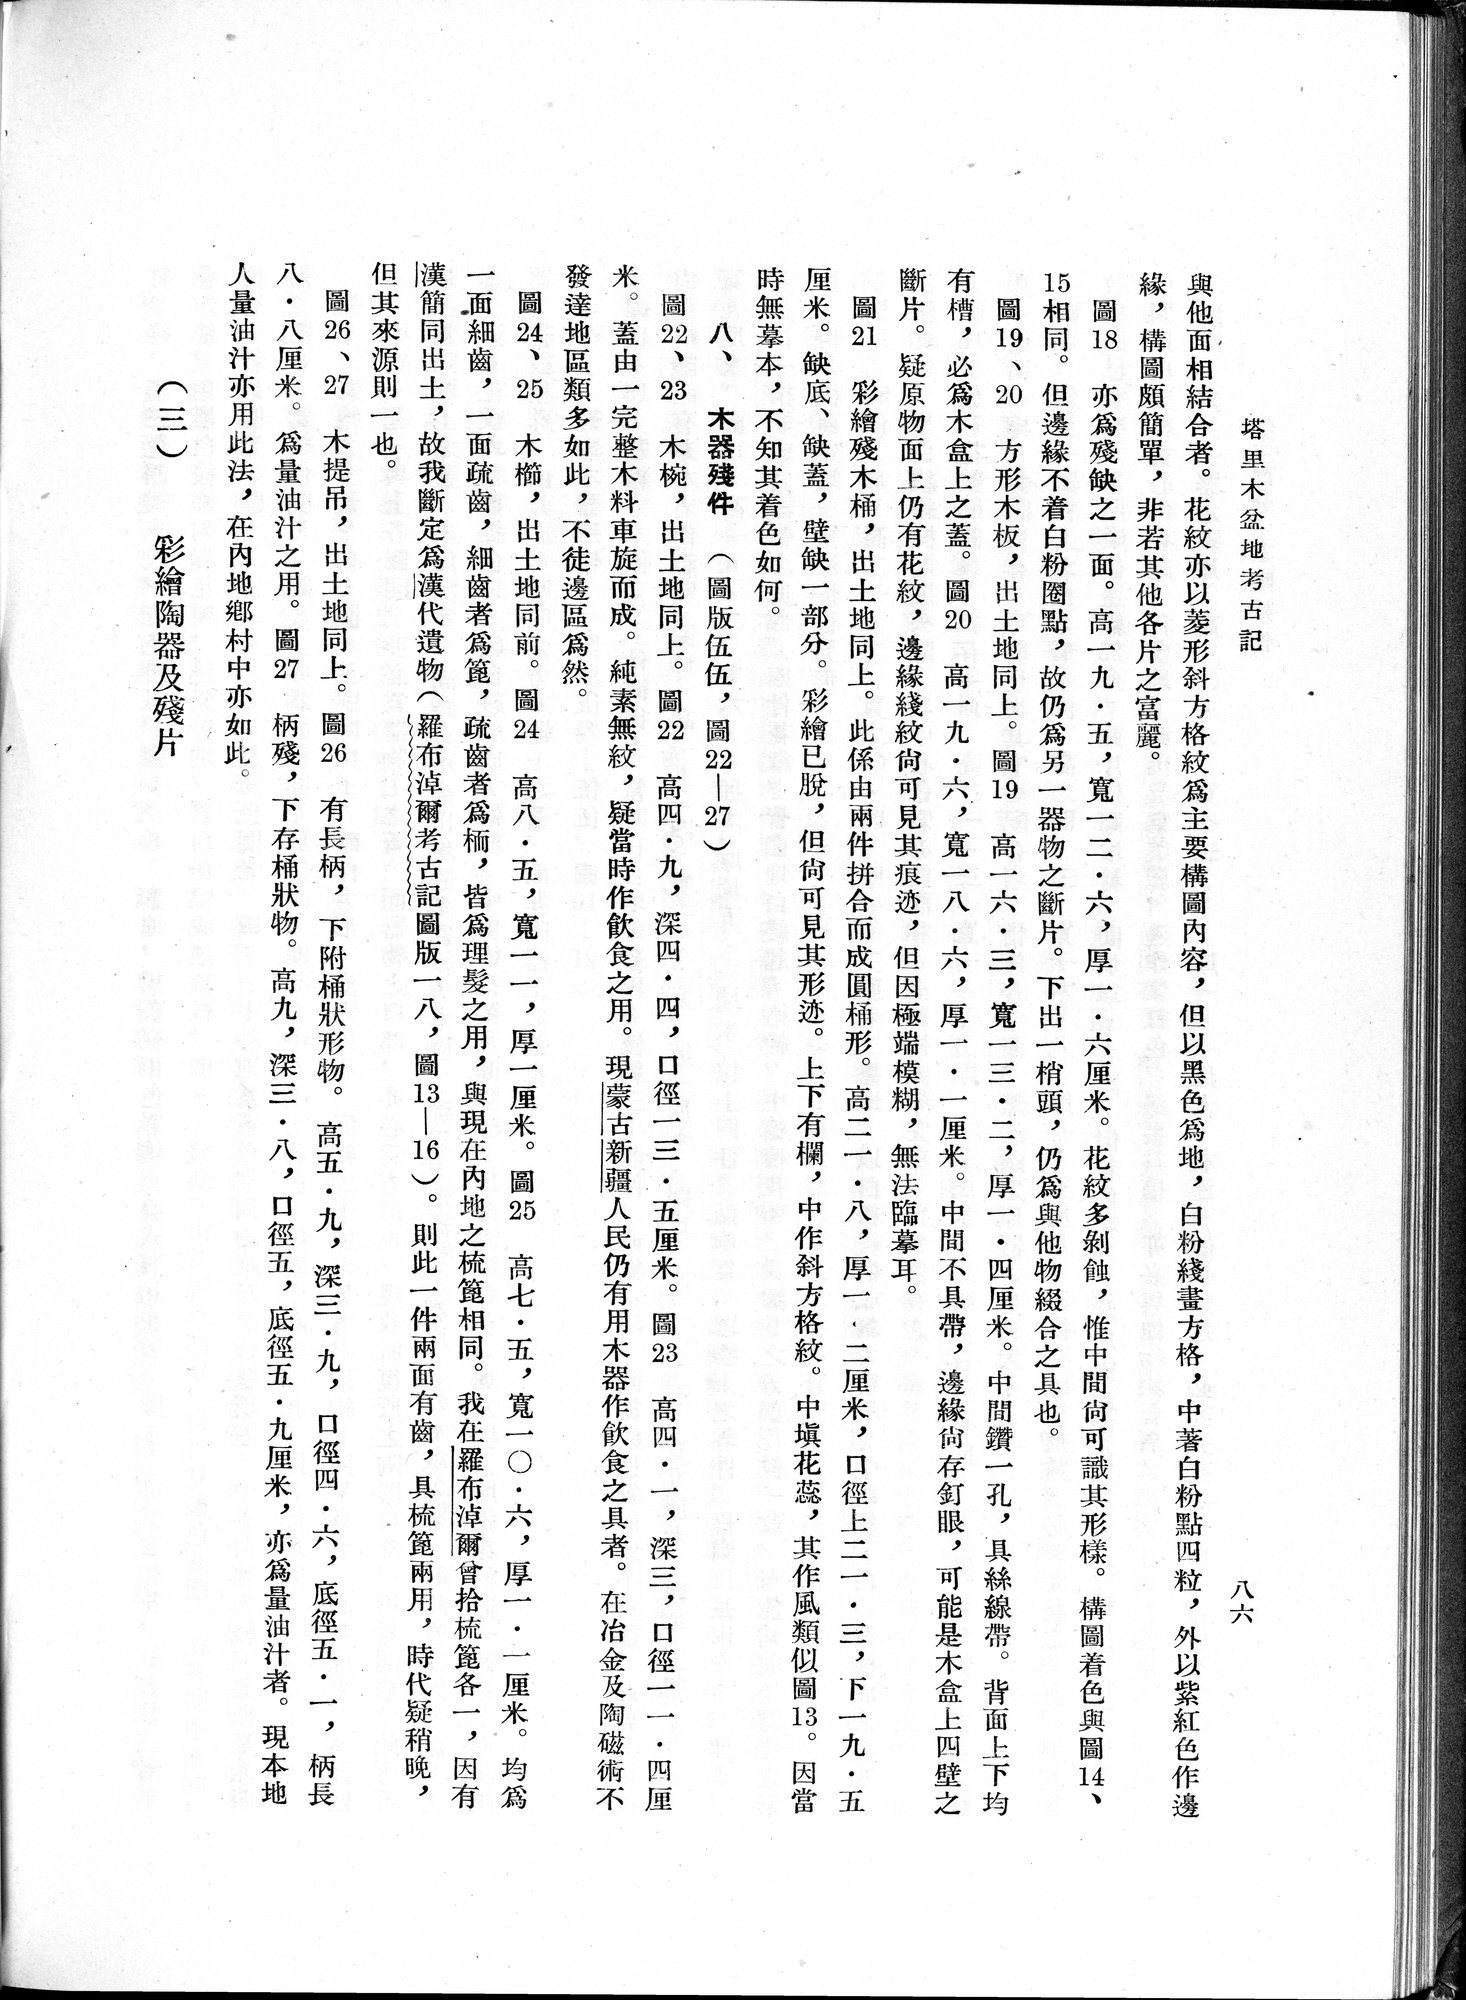 塔里木盆地考古記 : vol.1 / Page 150 (Grayscale High Resolution Image)